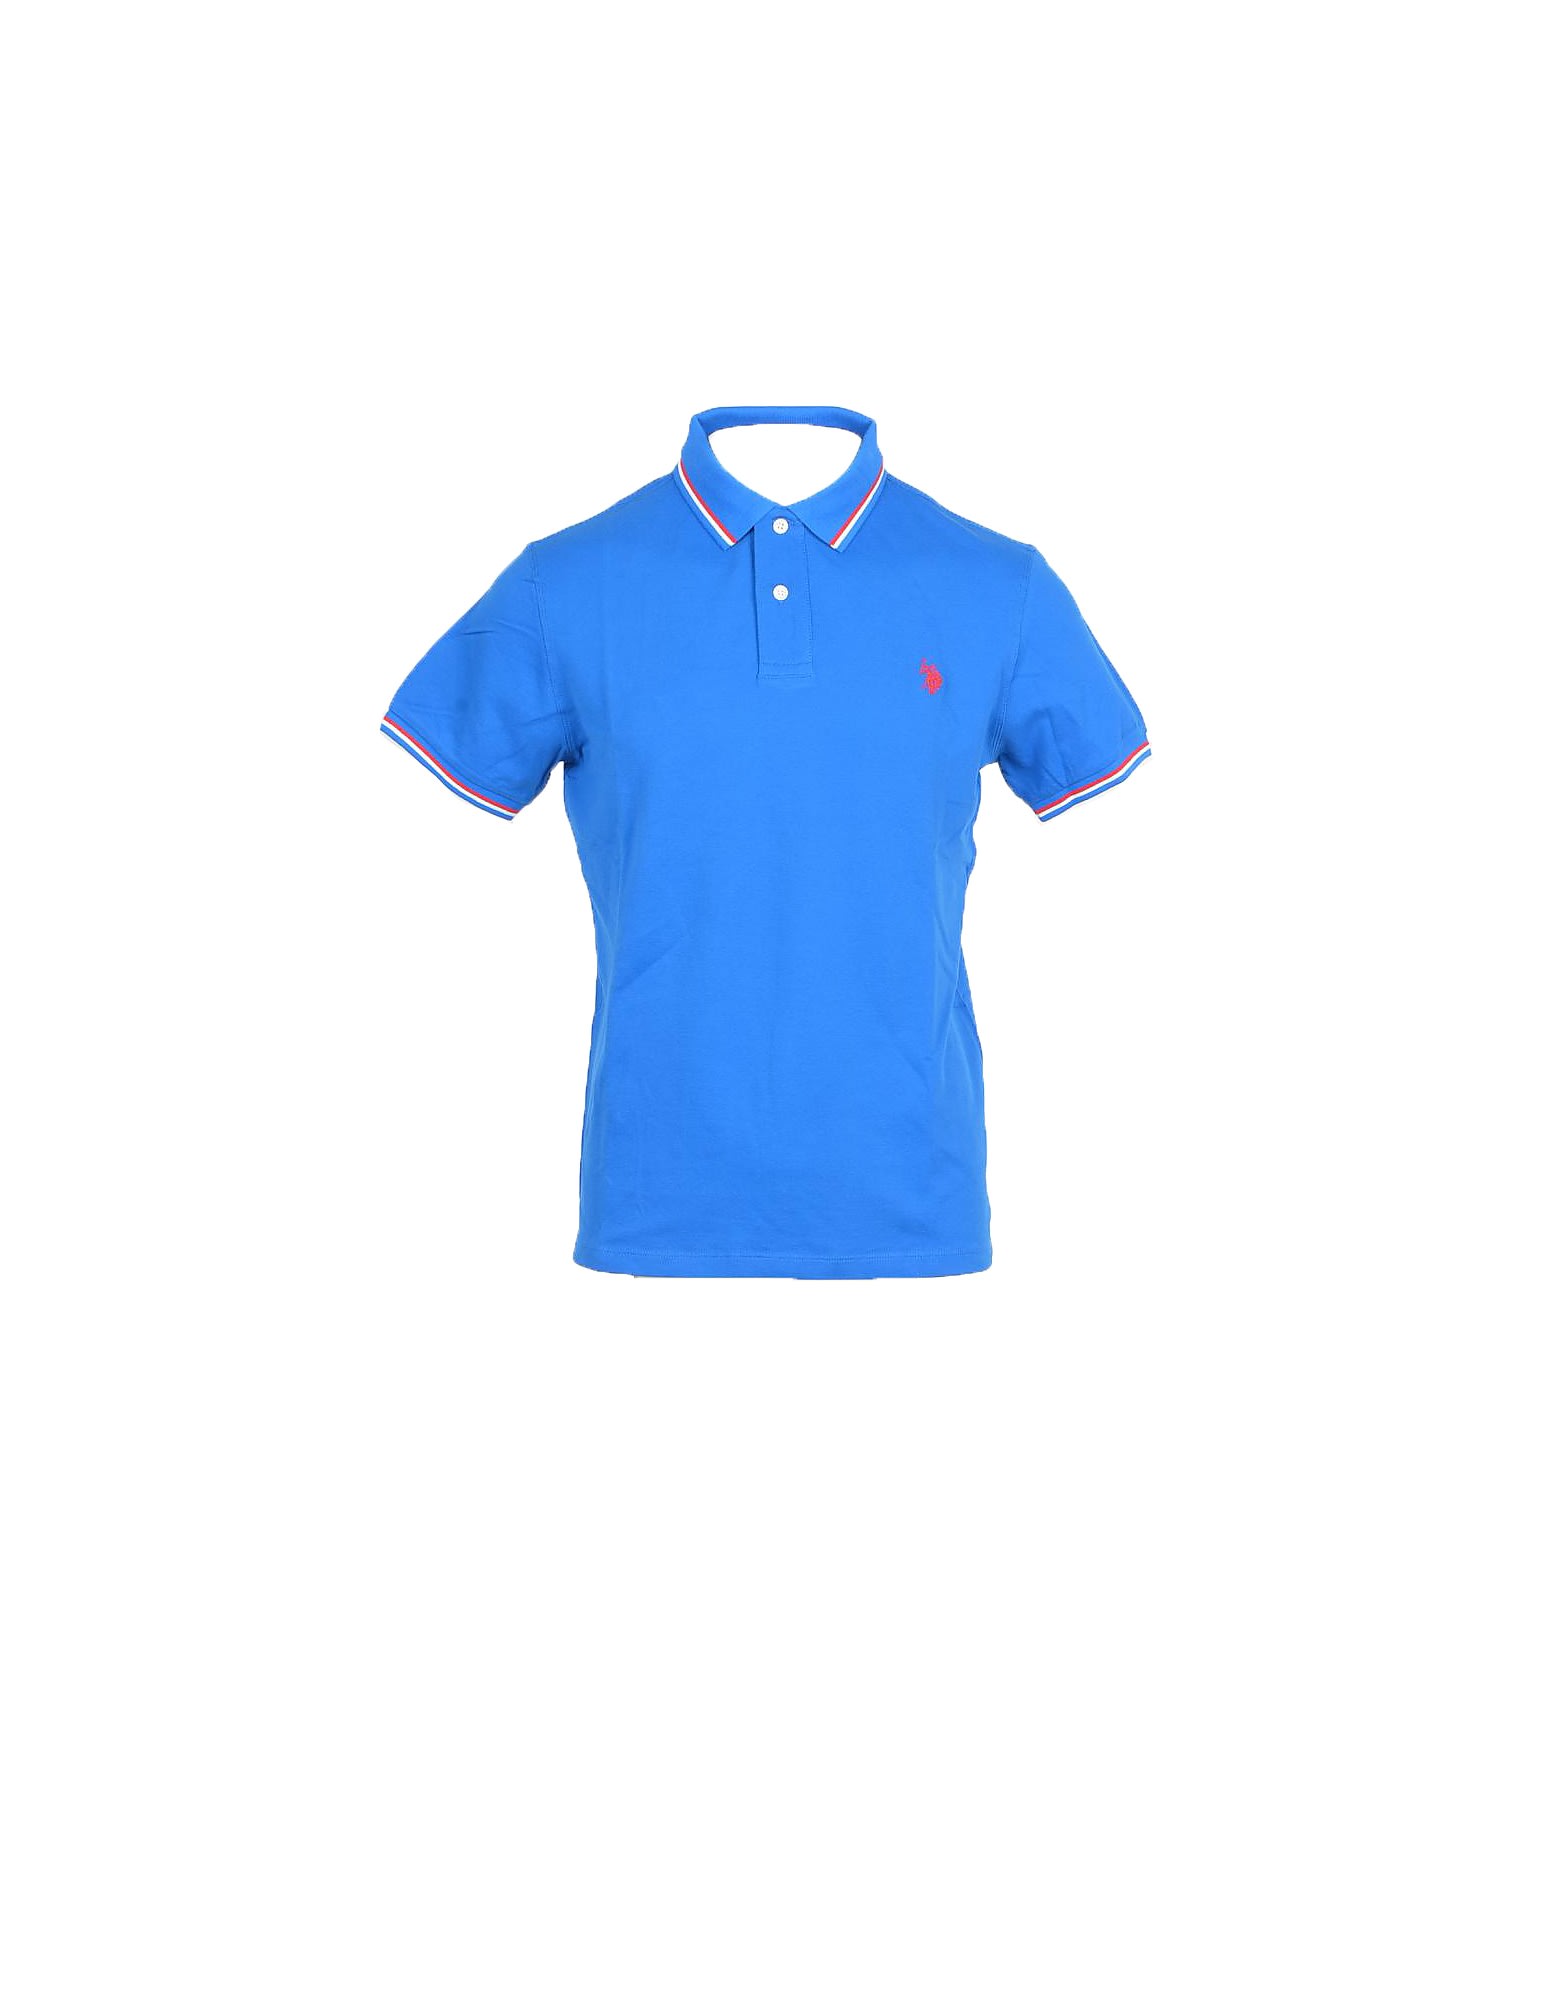 U.s. Polo Assn. Mens Bluette Shirt